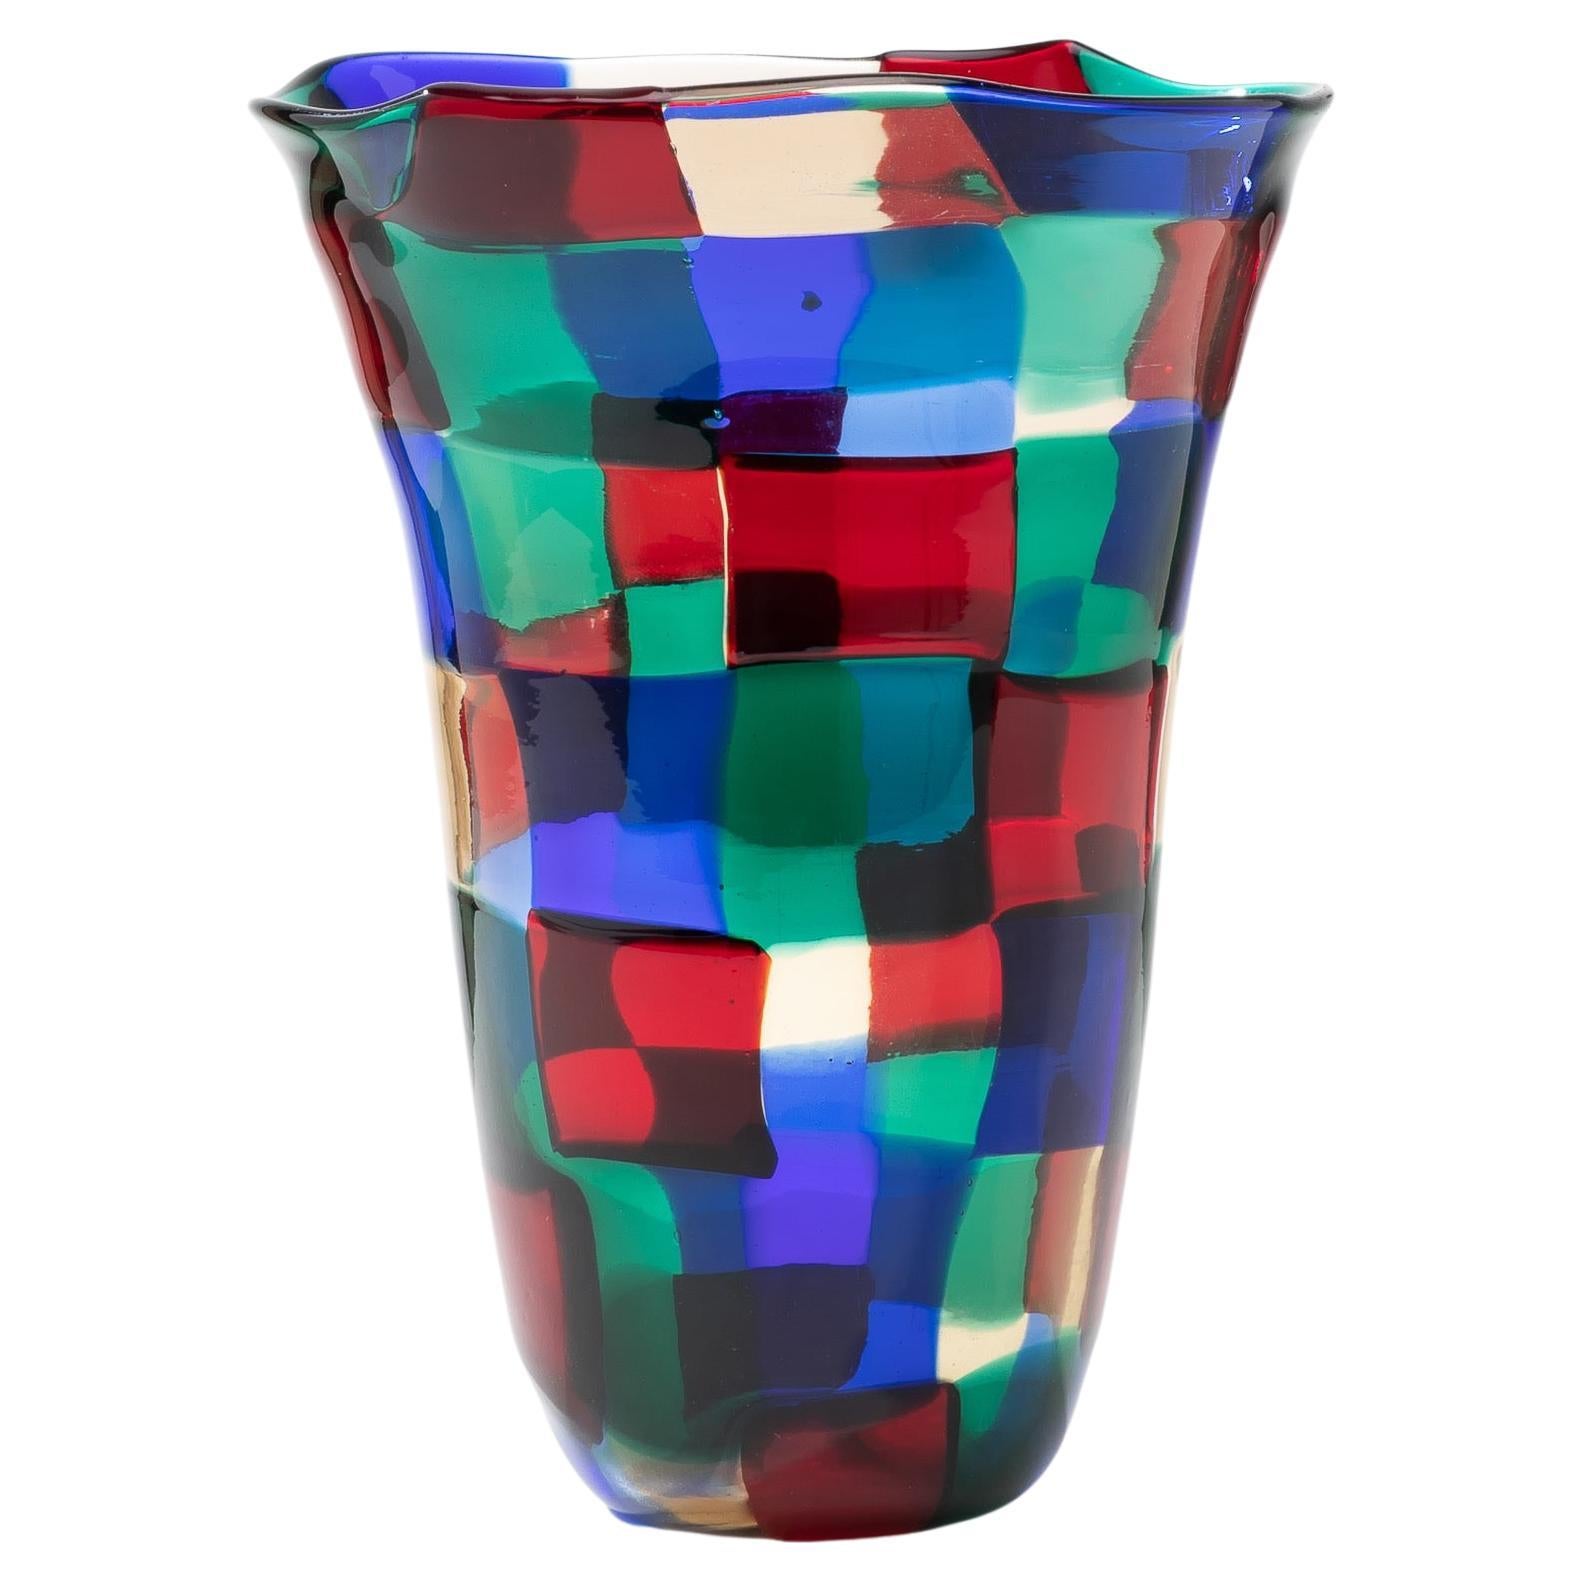 Pezzato Vase by Fulvio Bianconi, Color Variant “Parigi”, Venini Murano, Italy